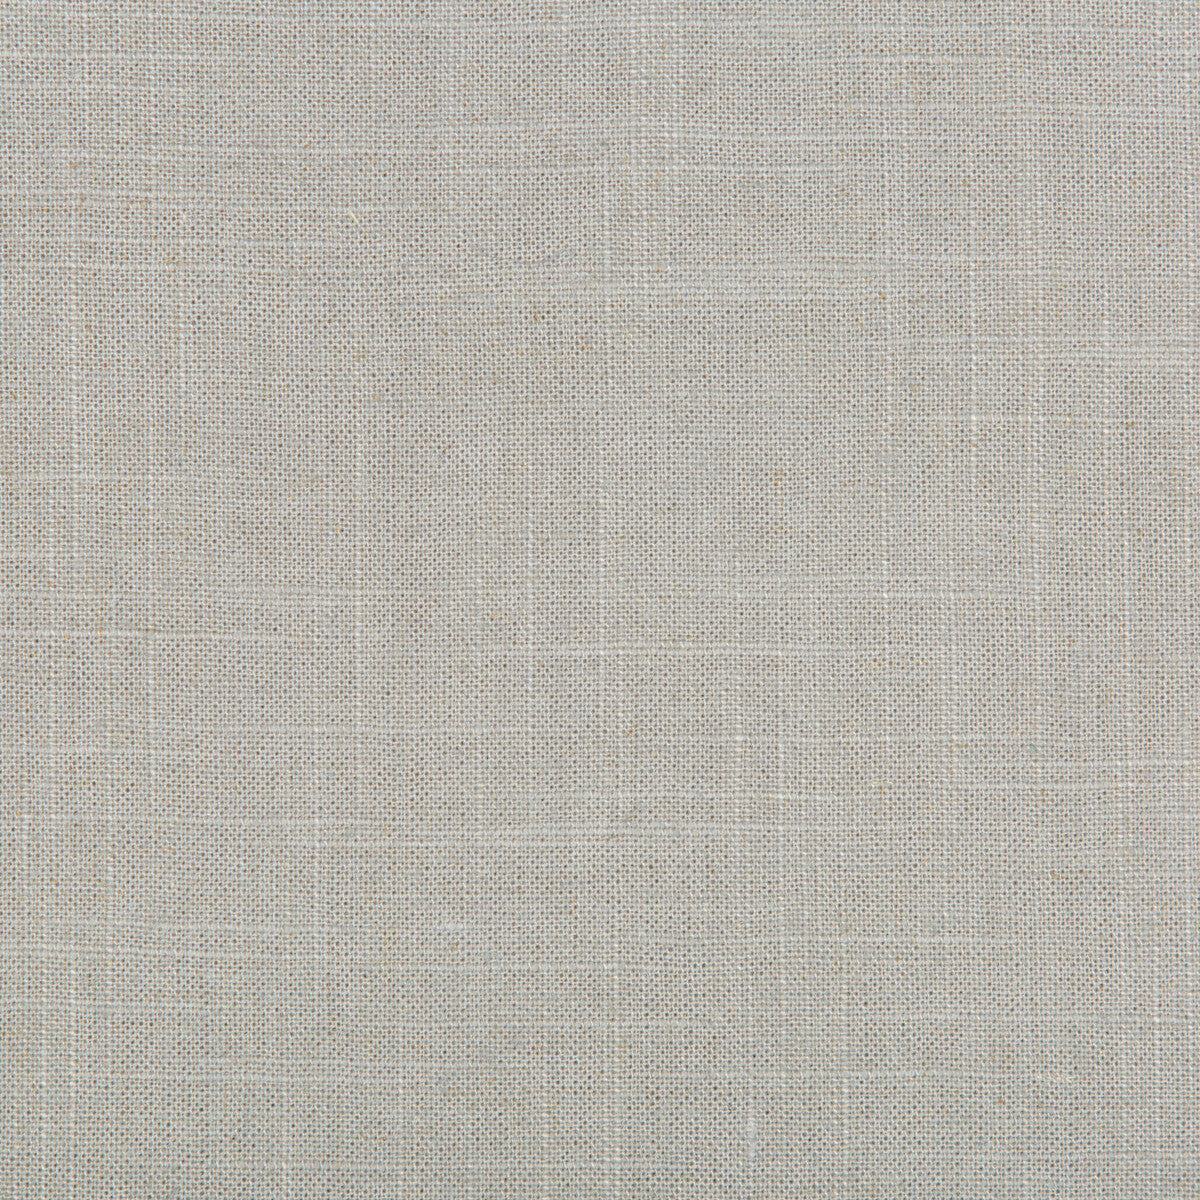 Kravet Basics fabric in 30808-11 color - pattern 30808.11.0 - by Kravet Basics